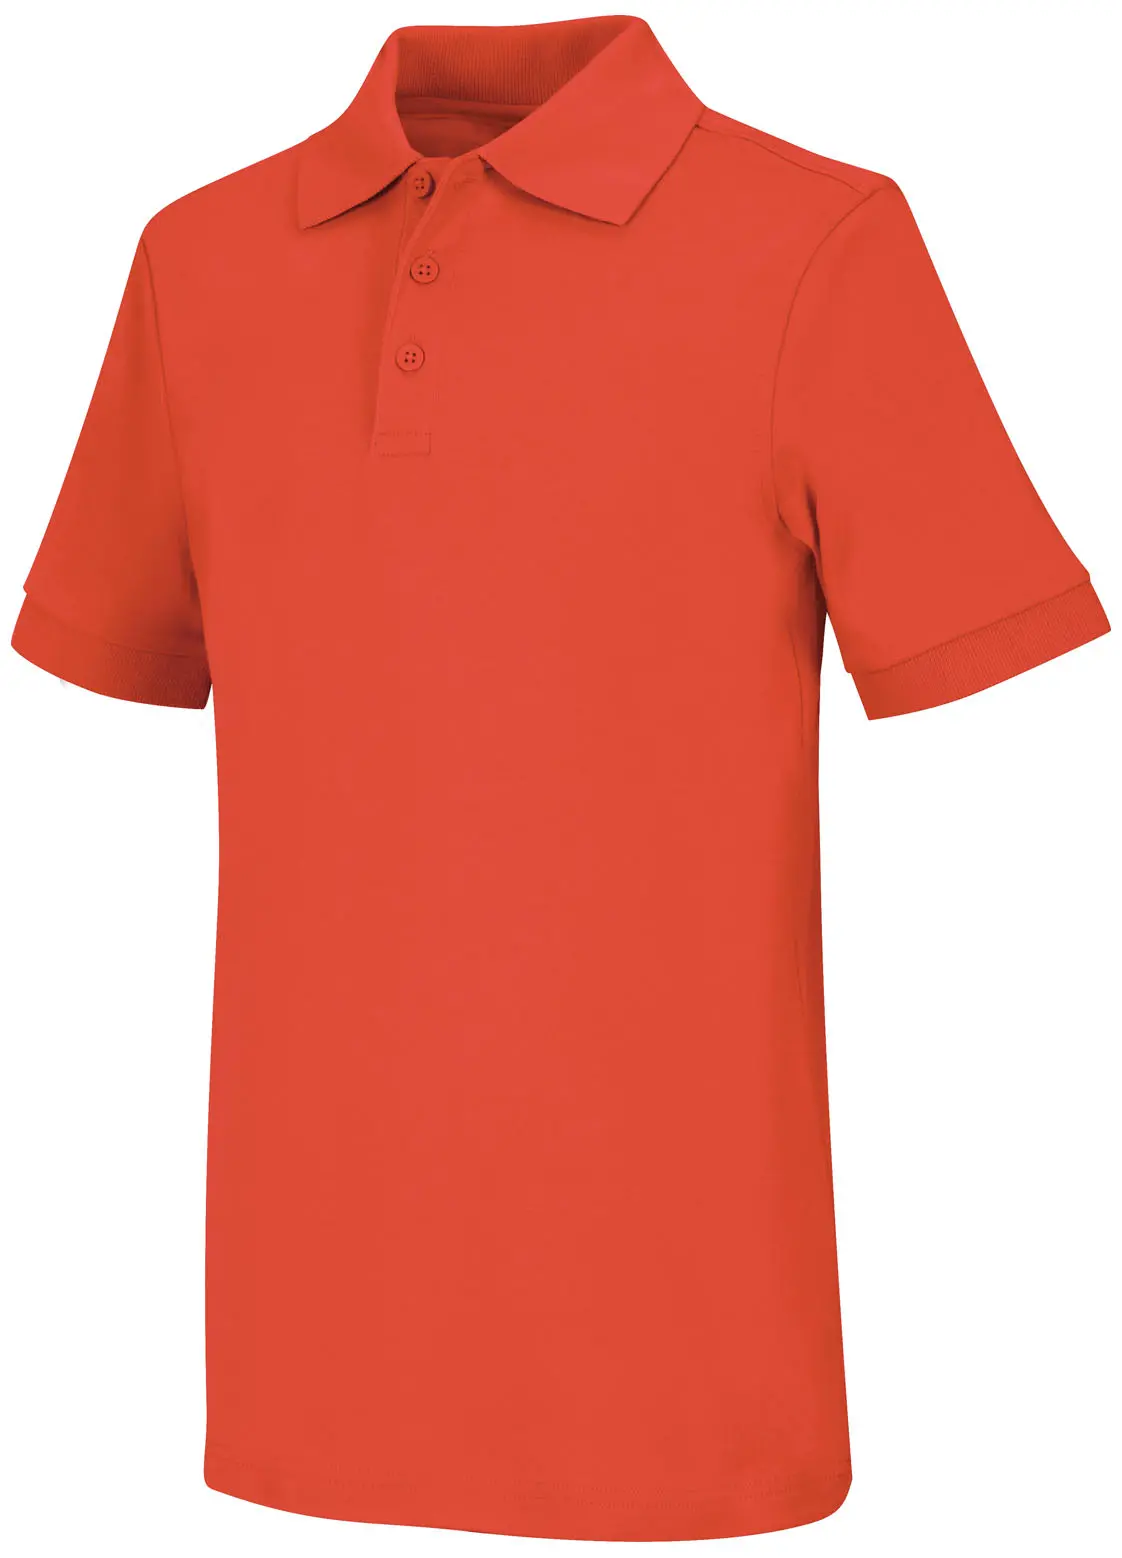 Youth Unisex Short Sleeve Interlock Polo